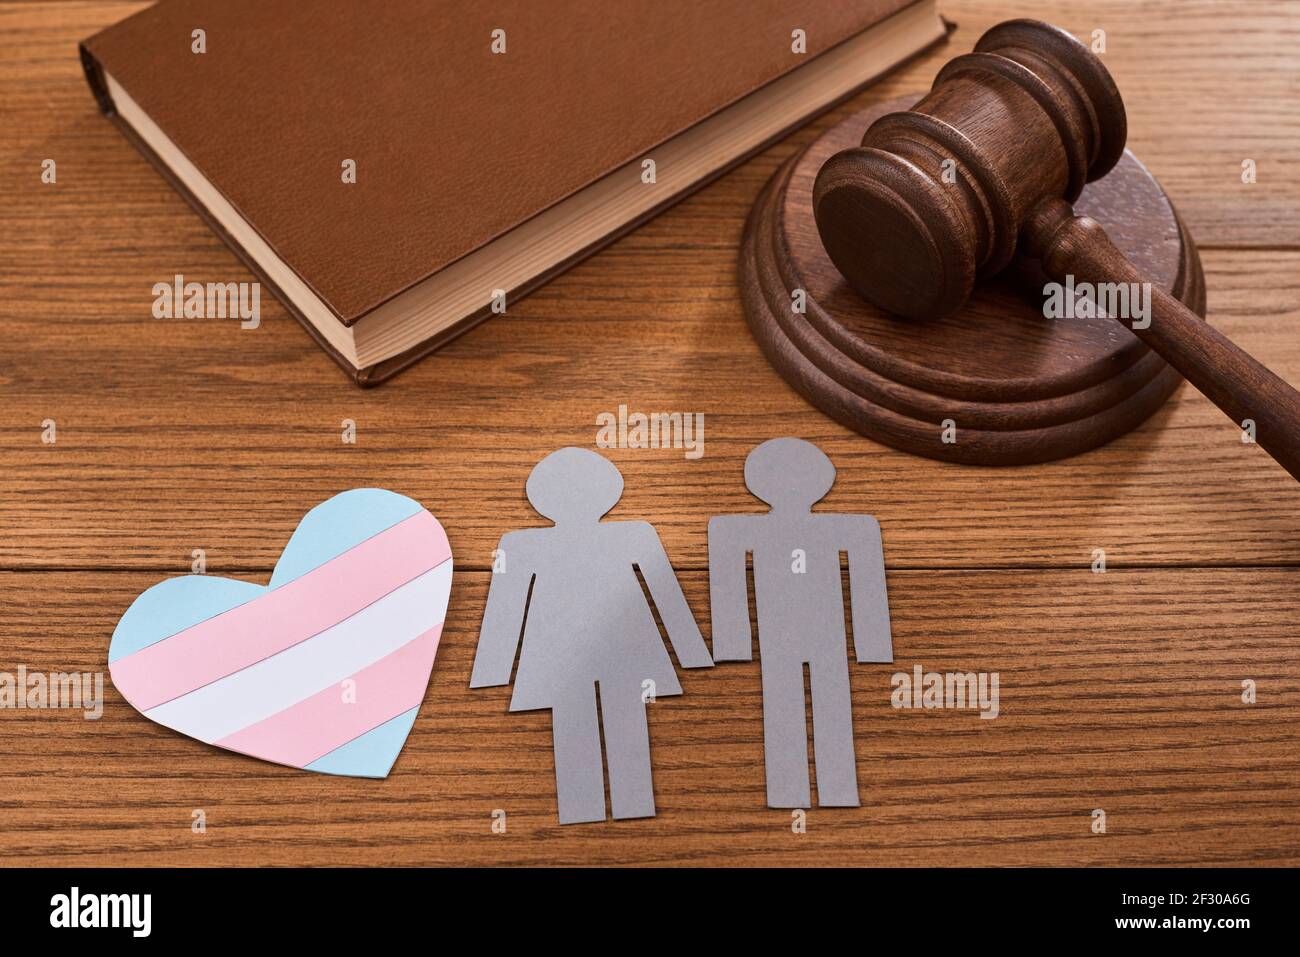 Un coeur en papier avec un drapeau de fierté transgenre, un couple, un gavel de juge et un livre Banque D'Images